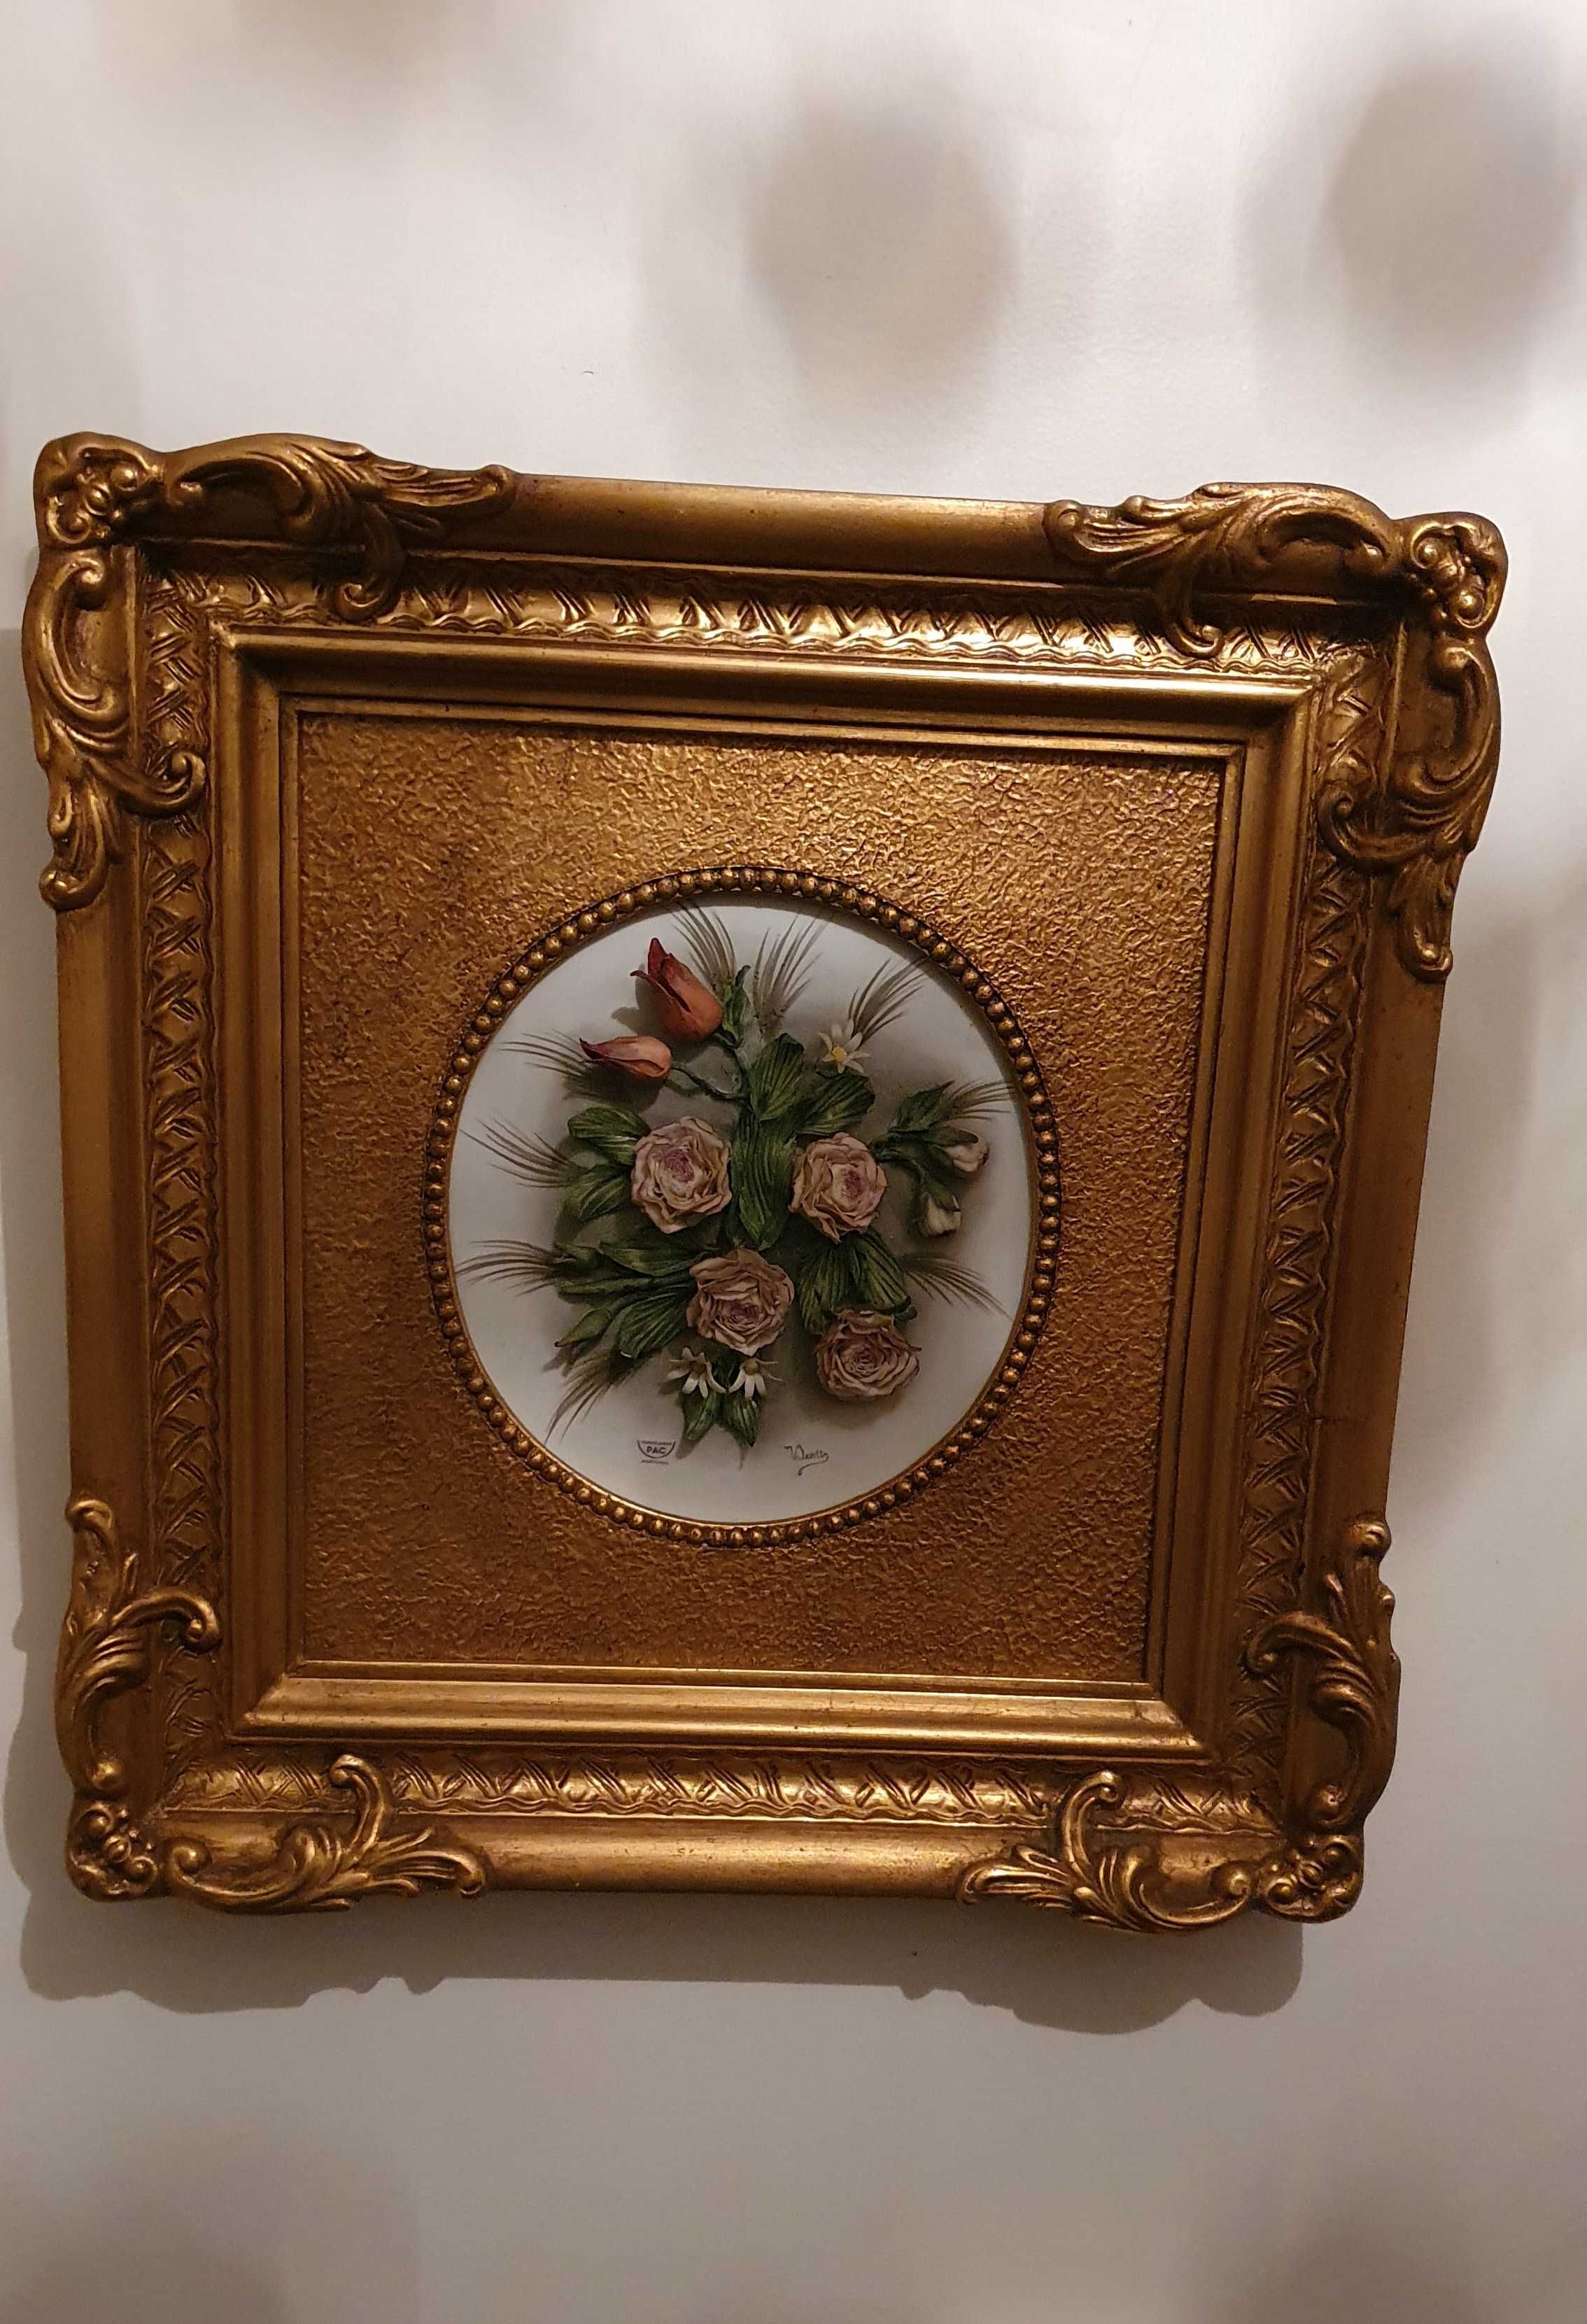 Quadro decorativo com flores em porcelana de alto relevo.